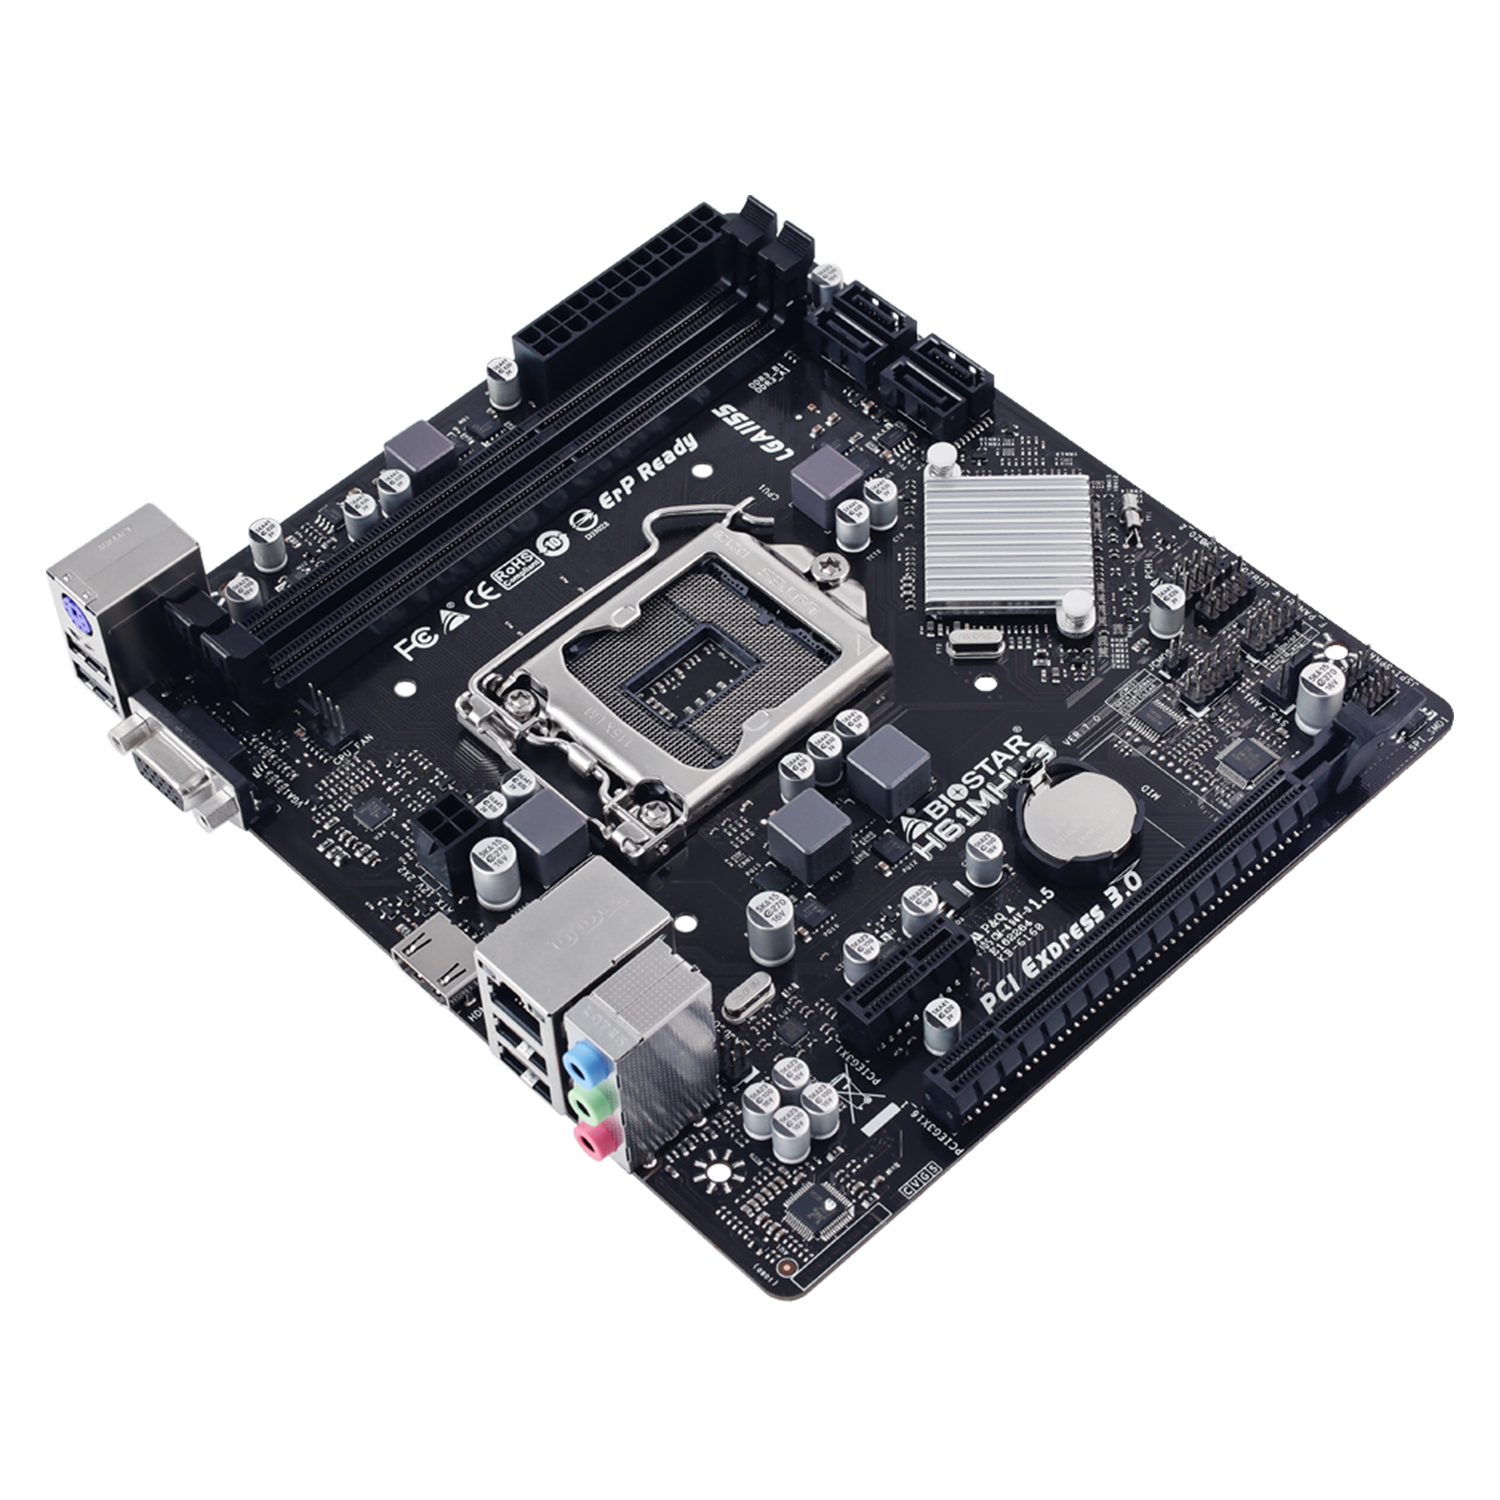 Placa Mãe Biostar H61MHV3 DDR3 Socket LGA 1155 Chipset Intel H61 Micro ATX